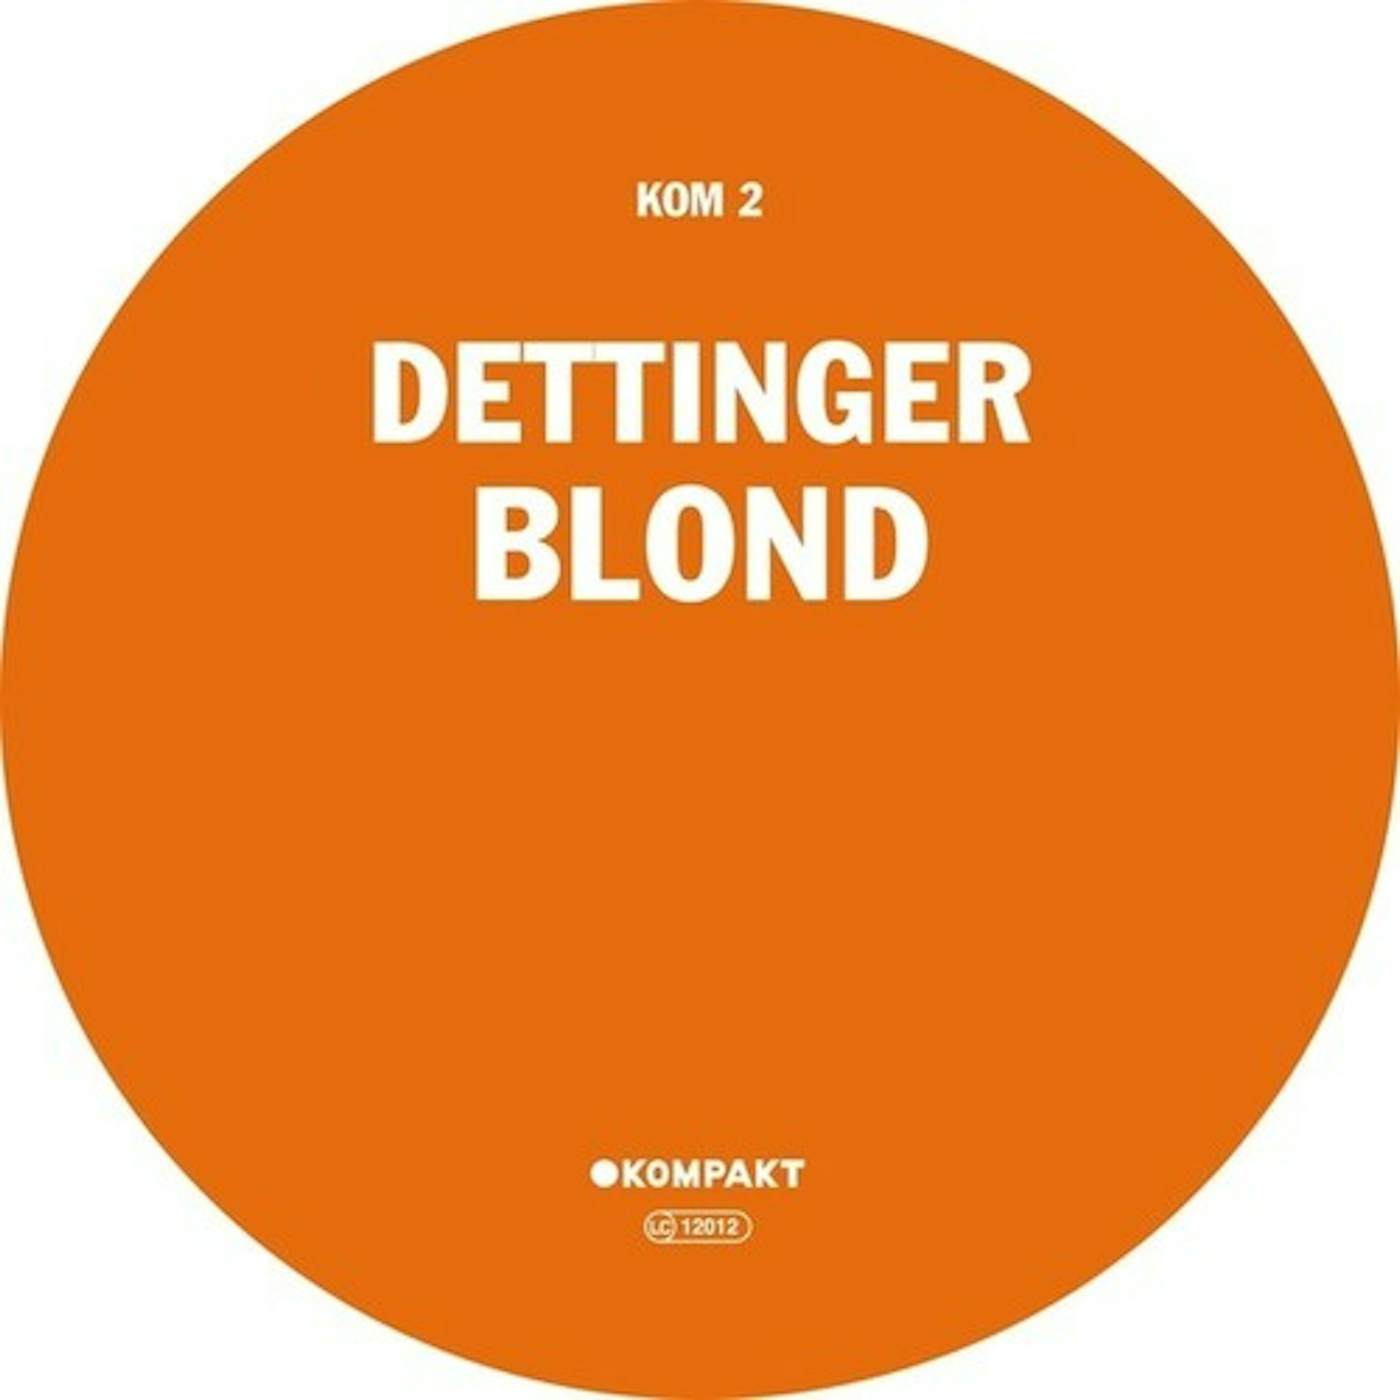 Dettinger Blond Vinyl Record